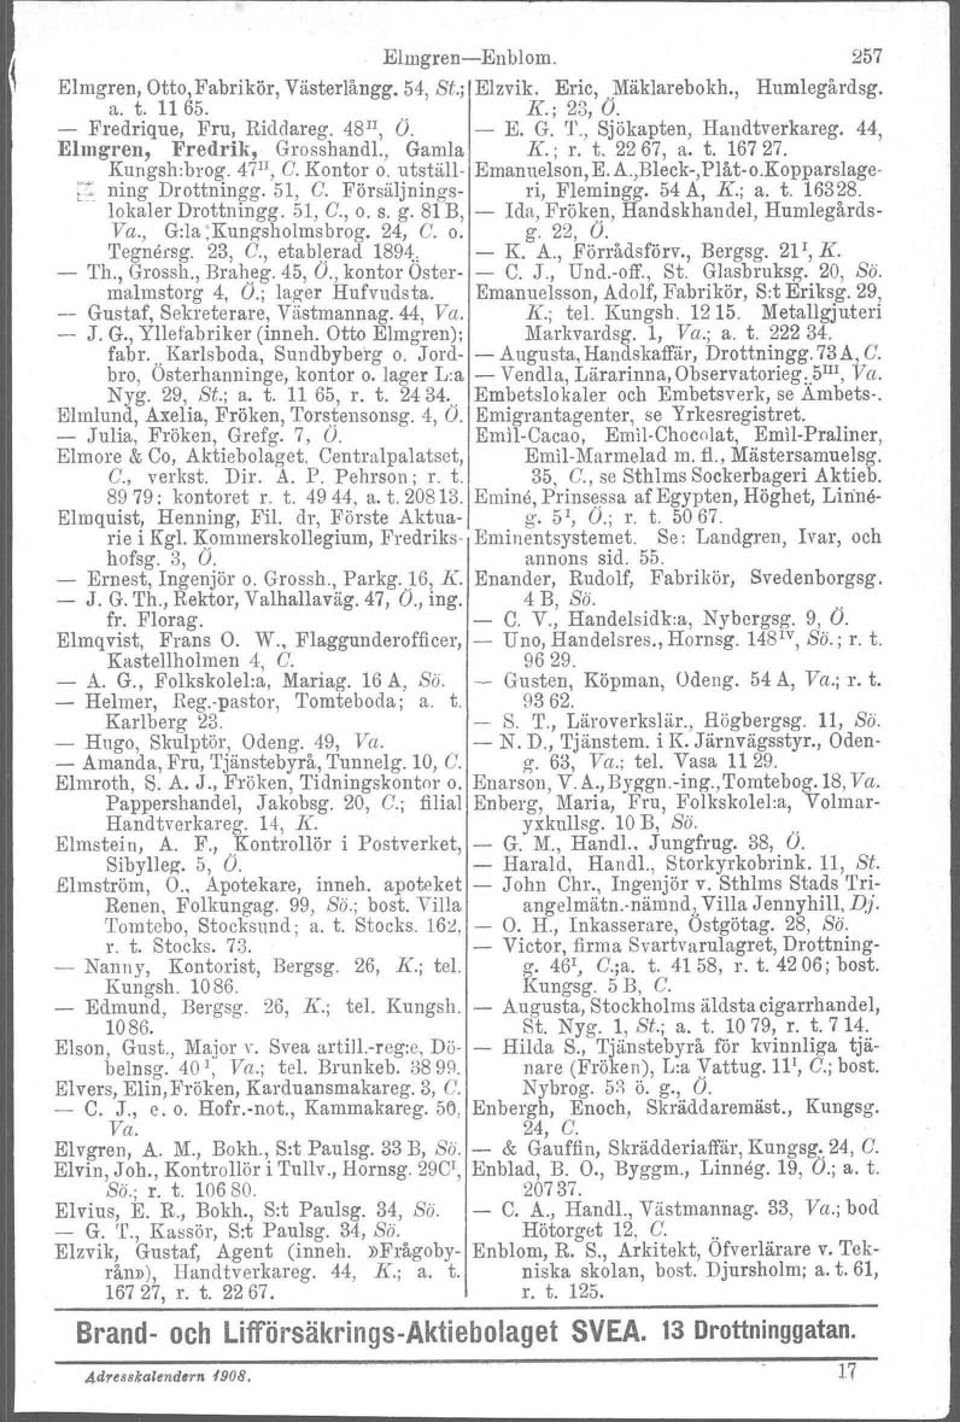 Försäljnings- ri, Flemingg. 54 A, K.; a. t. 16328. lokaler Drottningg. 51, C., o. s. g. 81 B, - Ida, Fröken, Handskhandel, Humlegårds- Va., G:la :Kungsholmsbrog. 24, C. o. g. 22, O. 'I'egnörsg. 23, C.